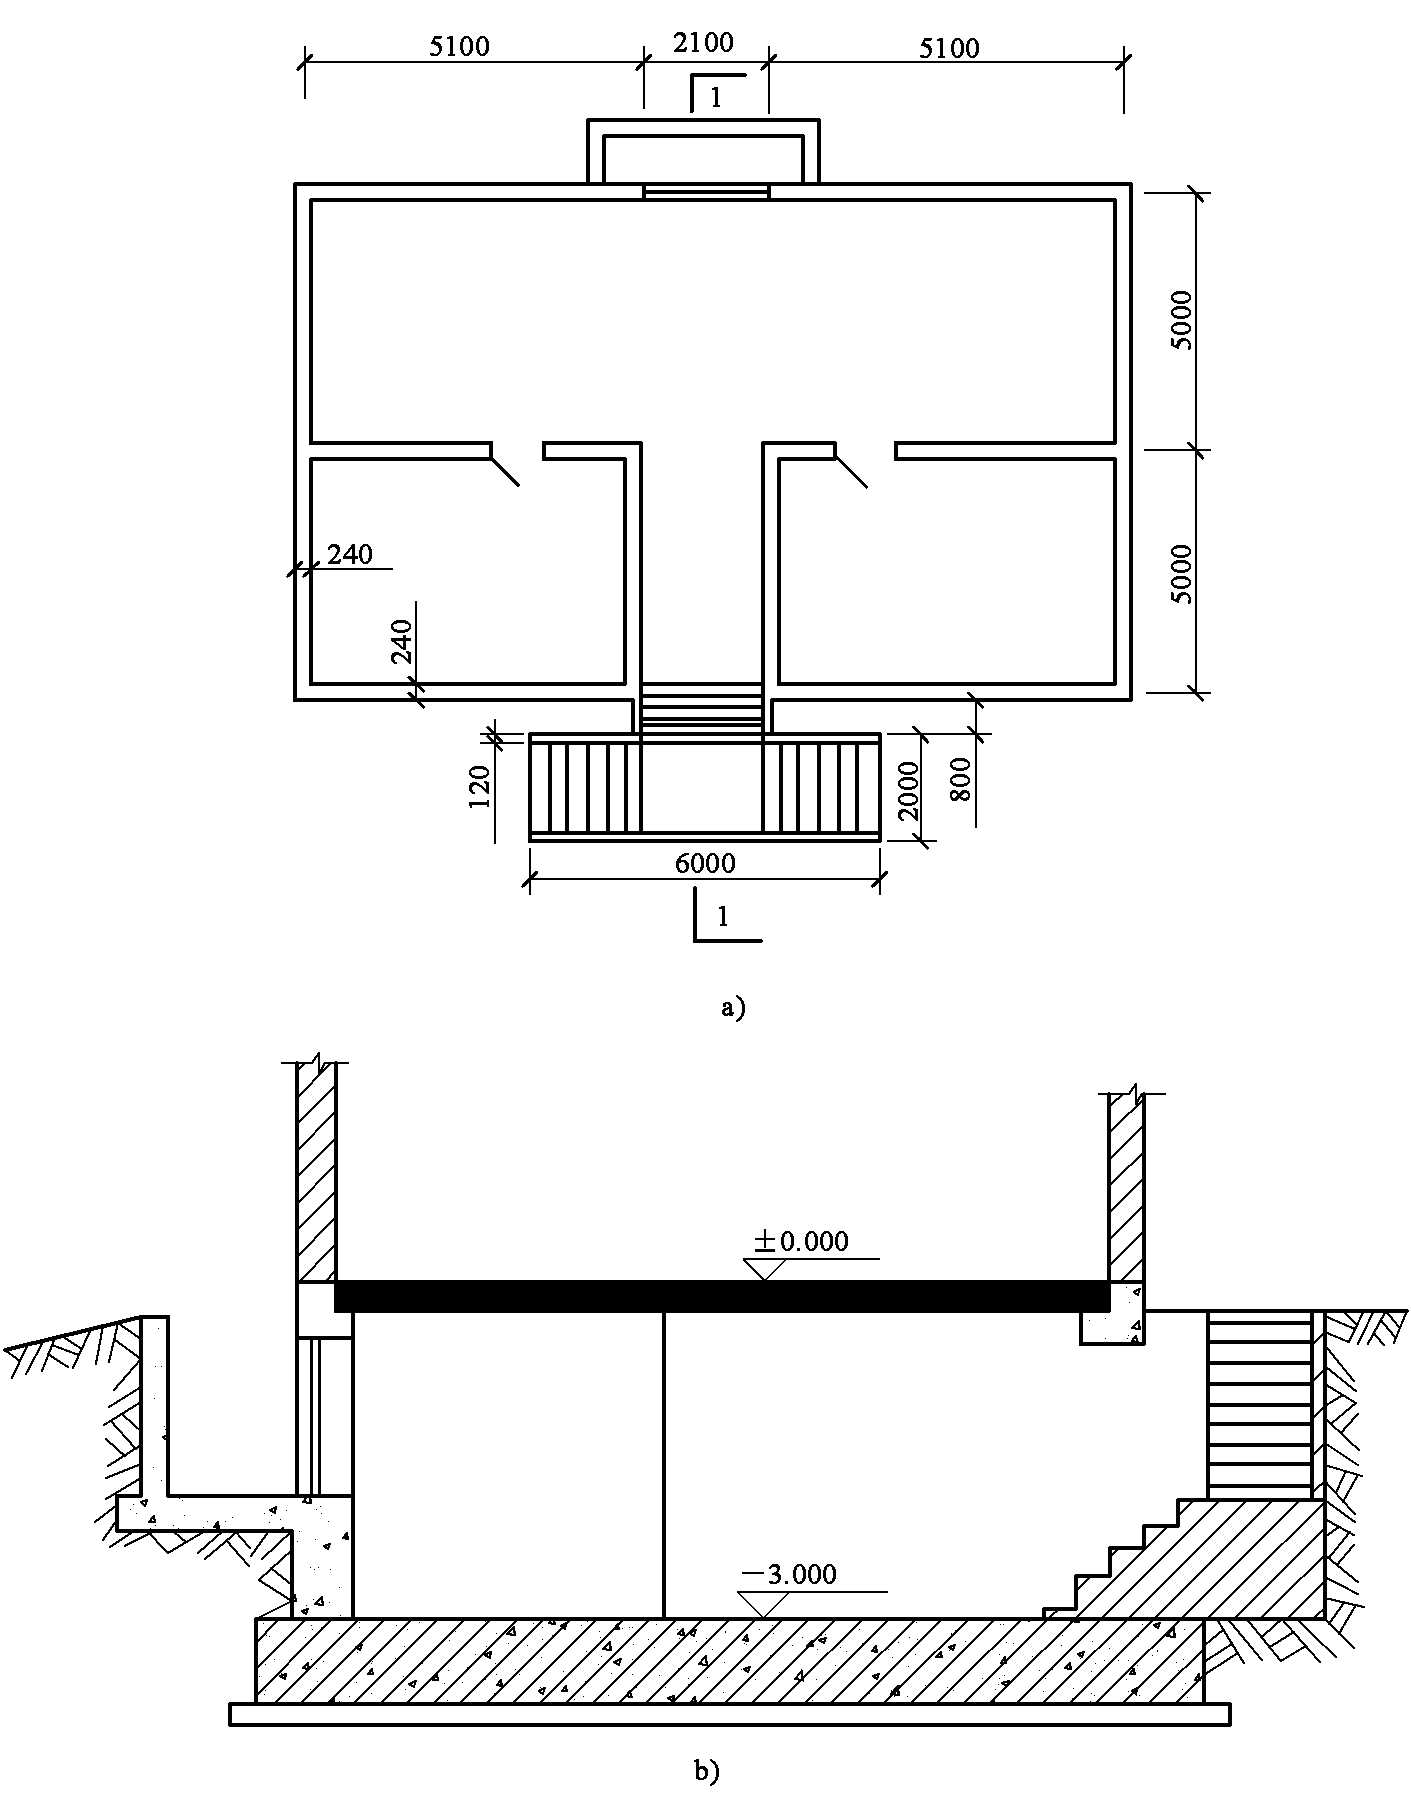 六、地下室、地下车间等建筑物的建筑面积的计算